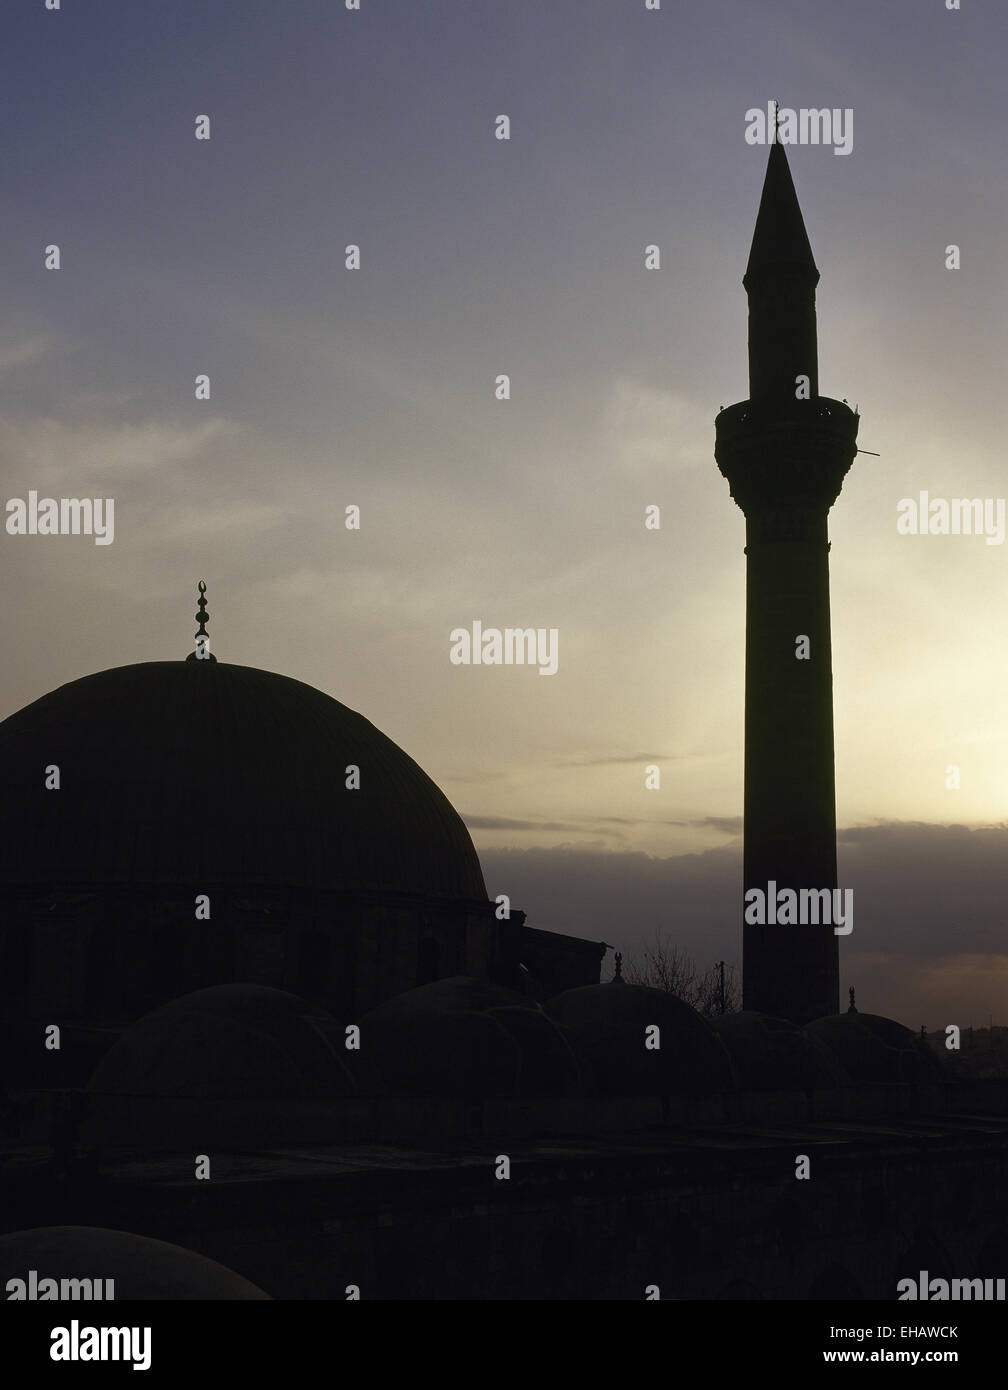 Syrien. Aleppo. Moschee. Sonnenuntergang. Foto vor dem syrischen Bürgerkrieg Stockfoto